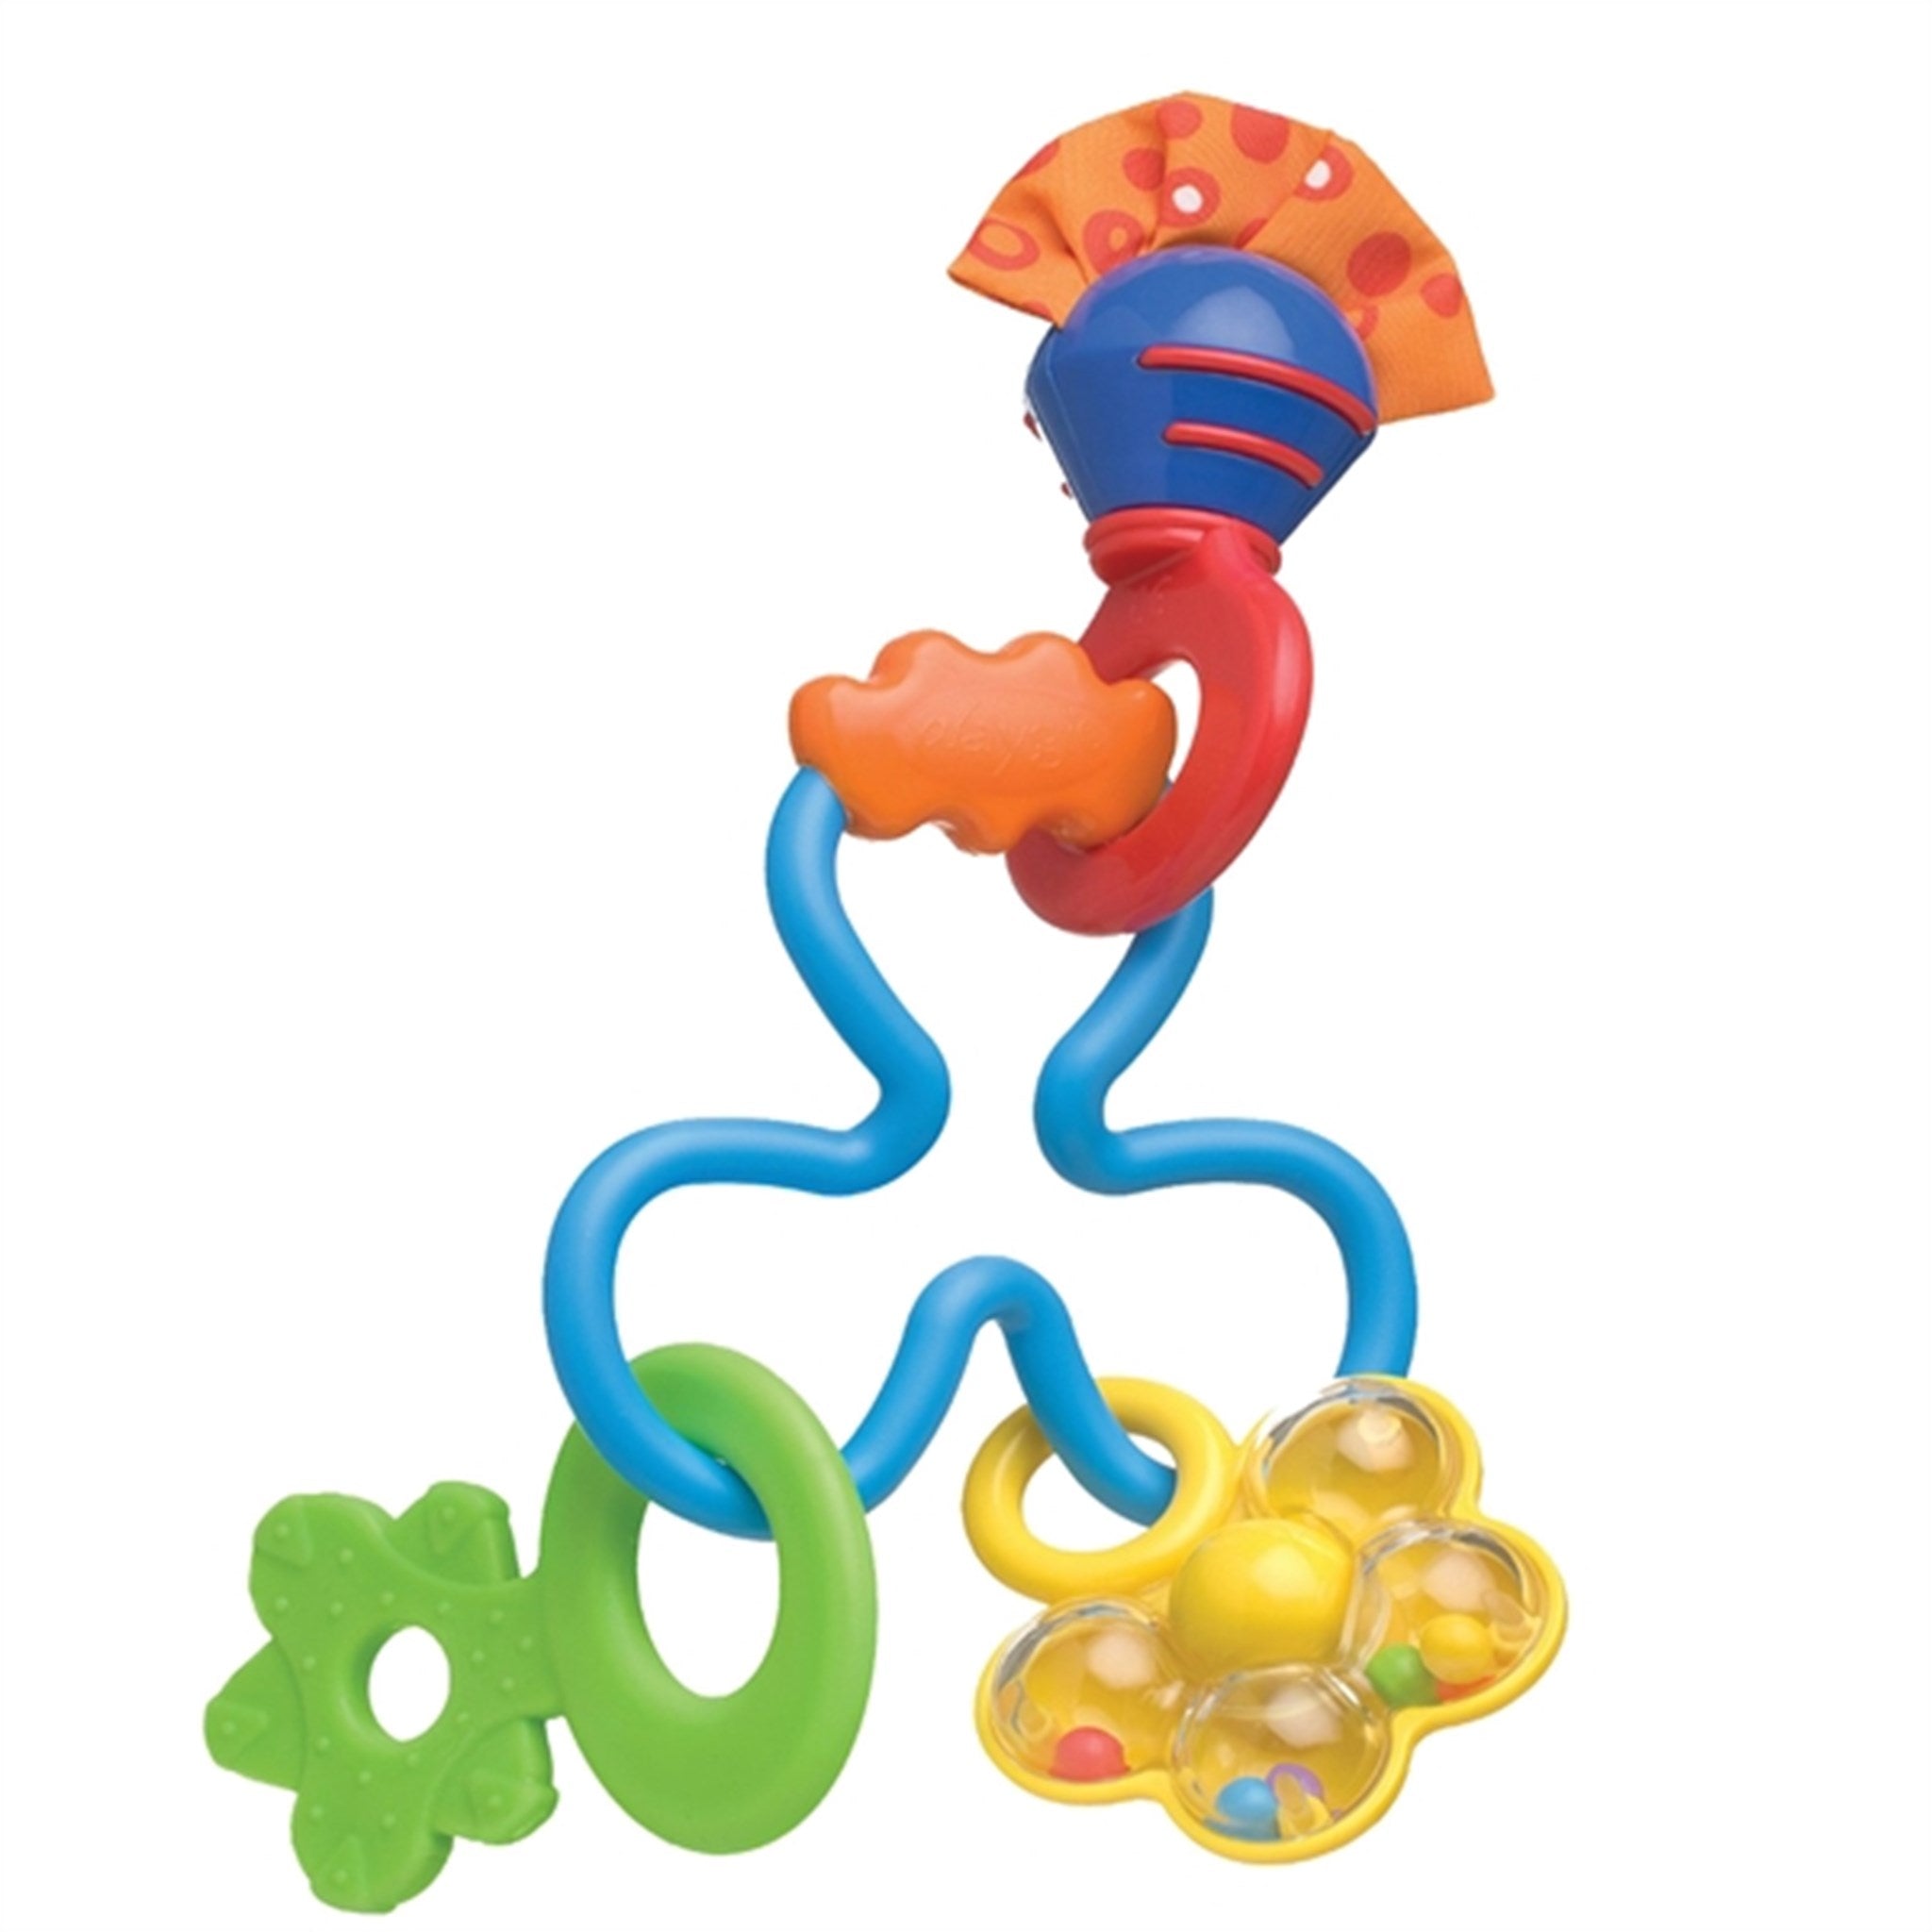 Playgro Twirly Whirl Rattle